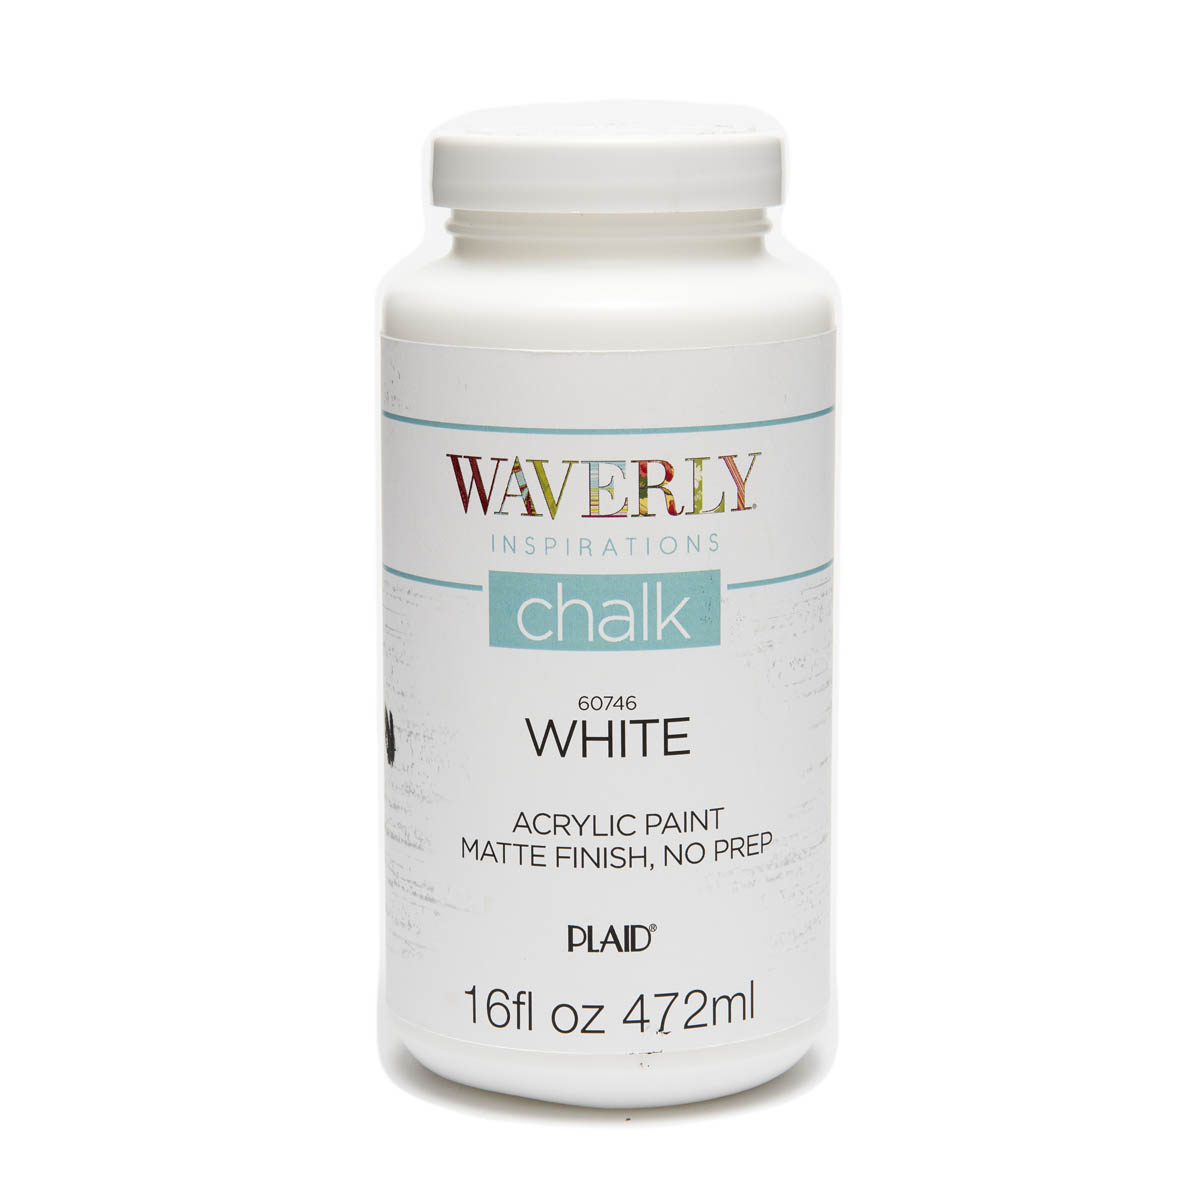 Waverly ® Inspirations Chalk Finish Acrylic Paint - White, 16 oz. - 60746E